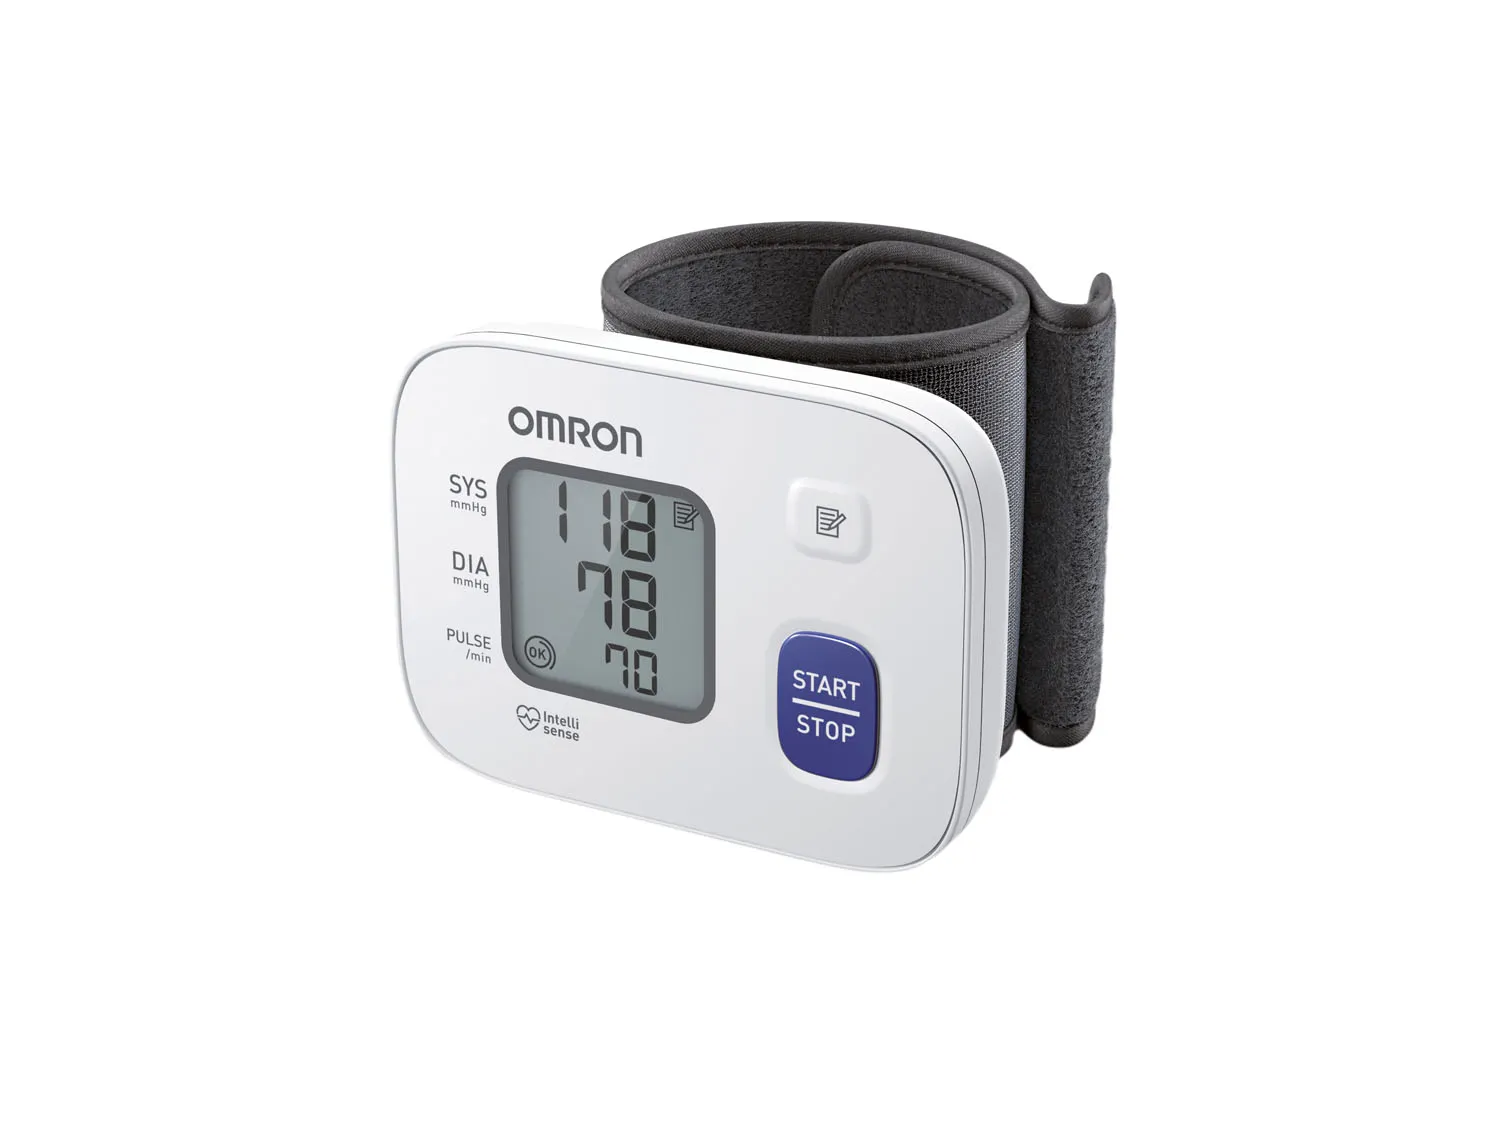 Handgelenk-Blutdruckmessgerät RS2 von OMRON, Ansicht komplettes Gerät von vorne, Gehäuse weiß und Manschette schwarz,die Anzeige im Display zeigt den Blutdruck 118 mmHg zu 78 mmHg und einen Plus von 70 bpm